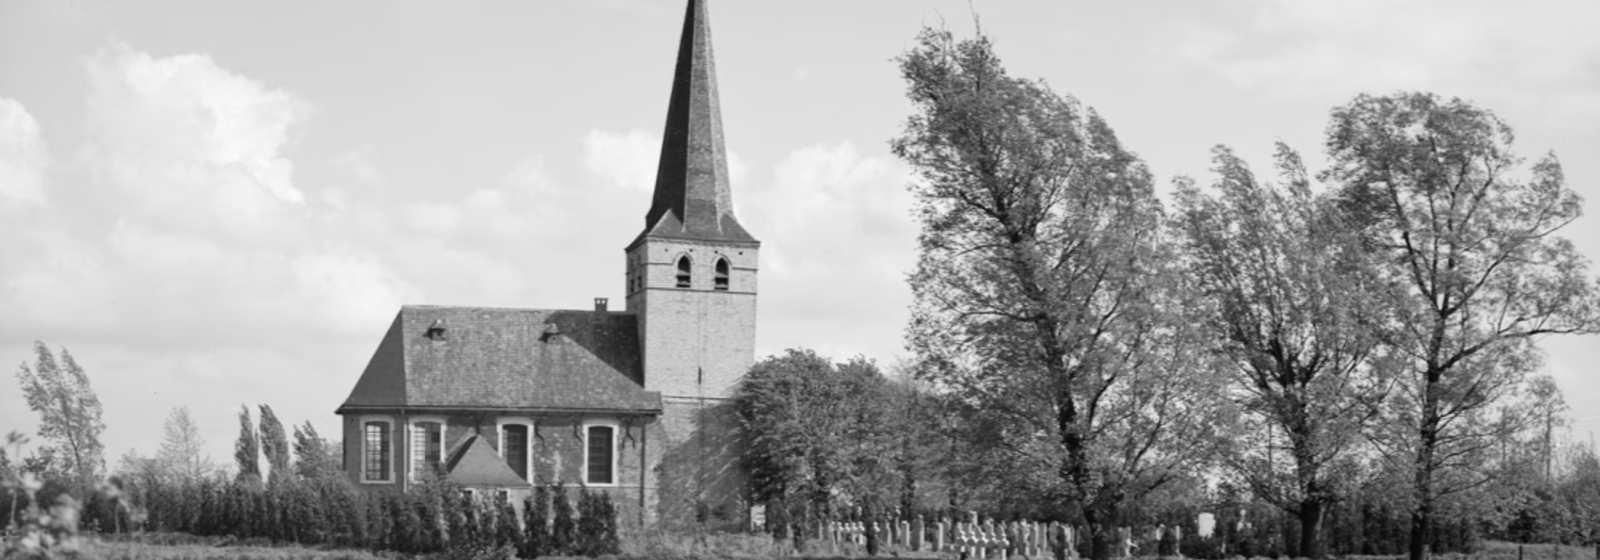 Kerkje Oosterweel